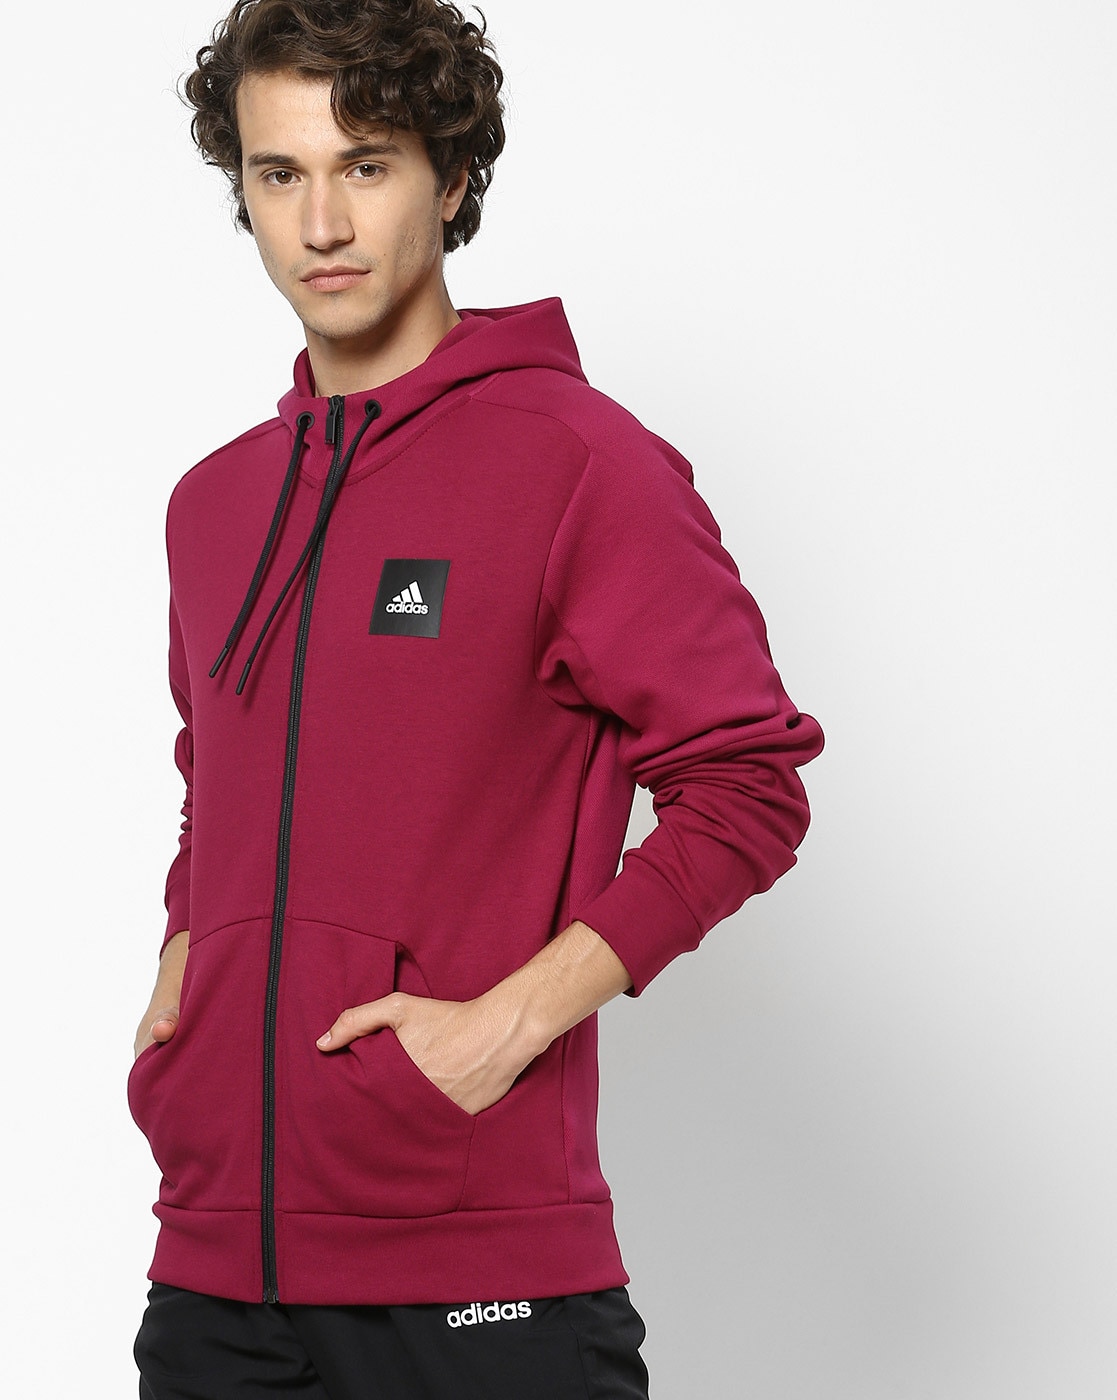 adidas burgundy hoodie mens